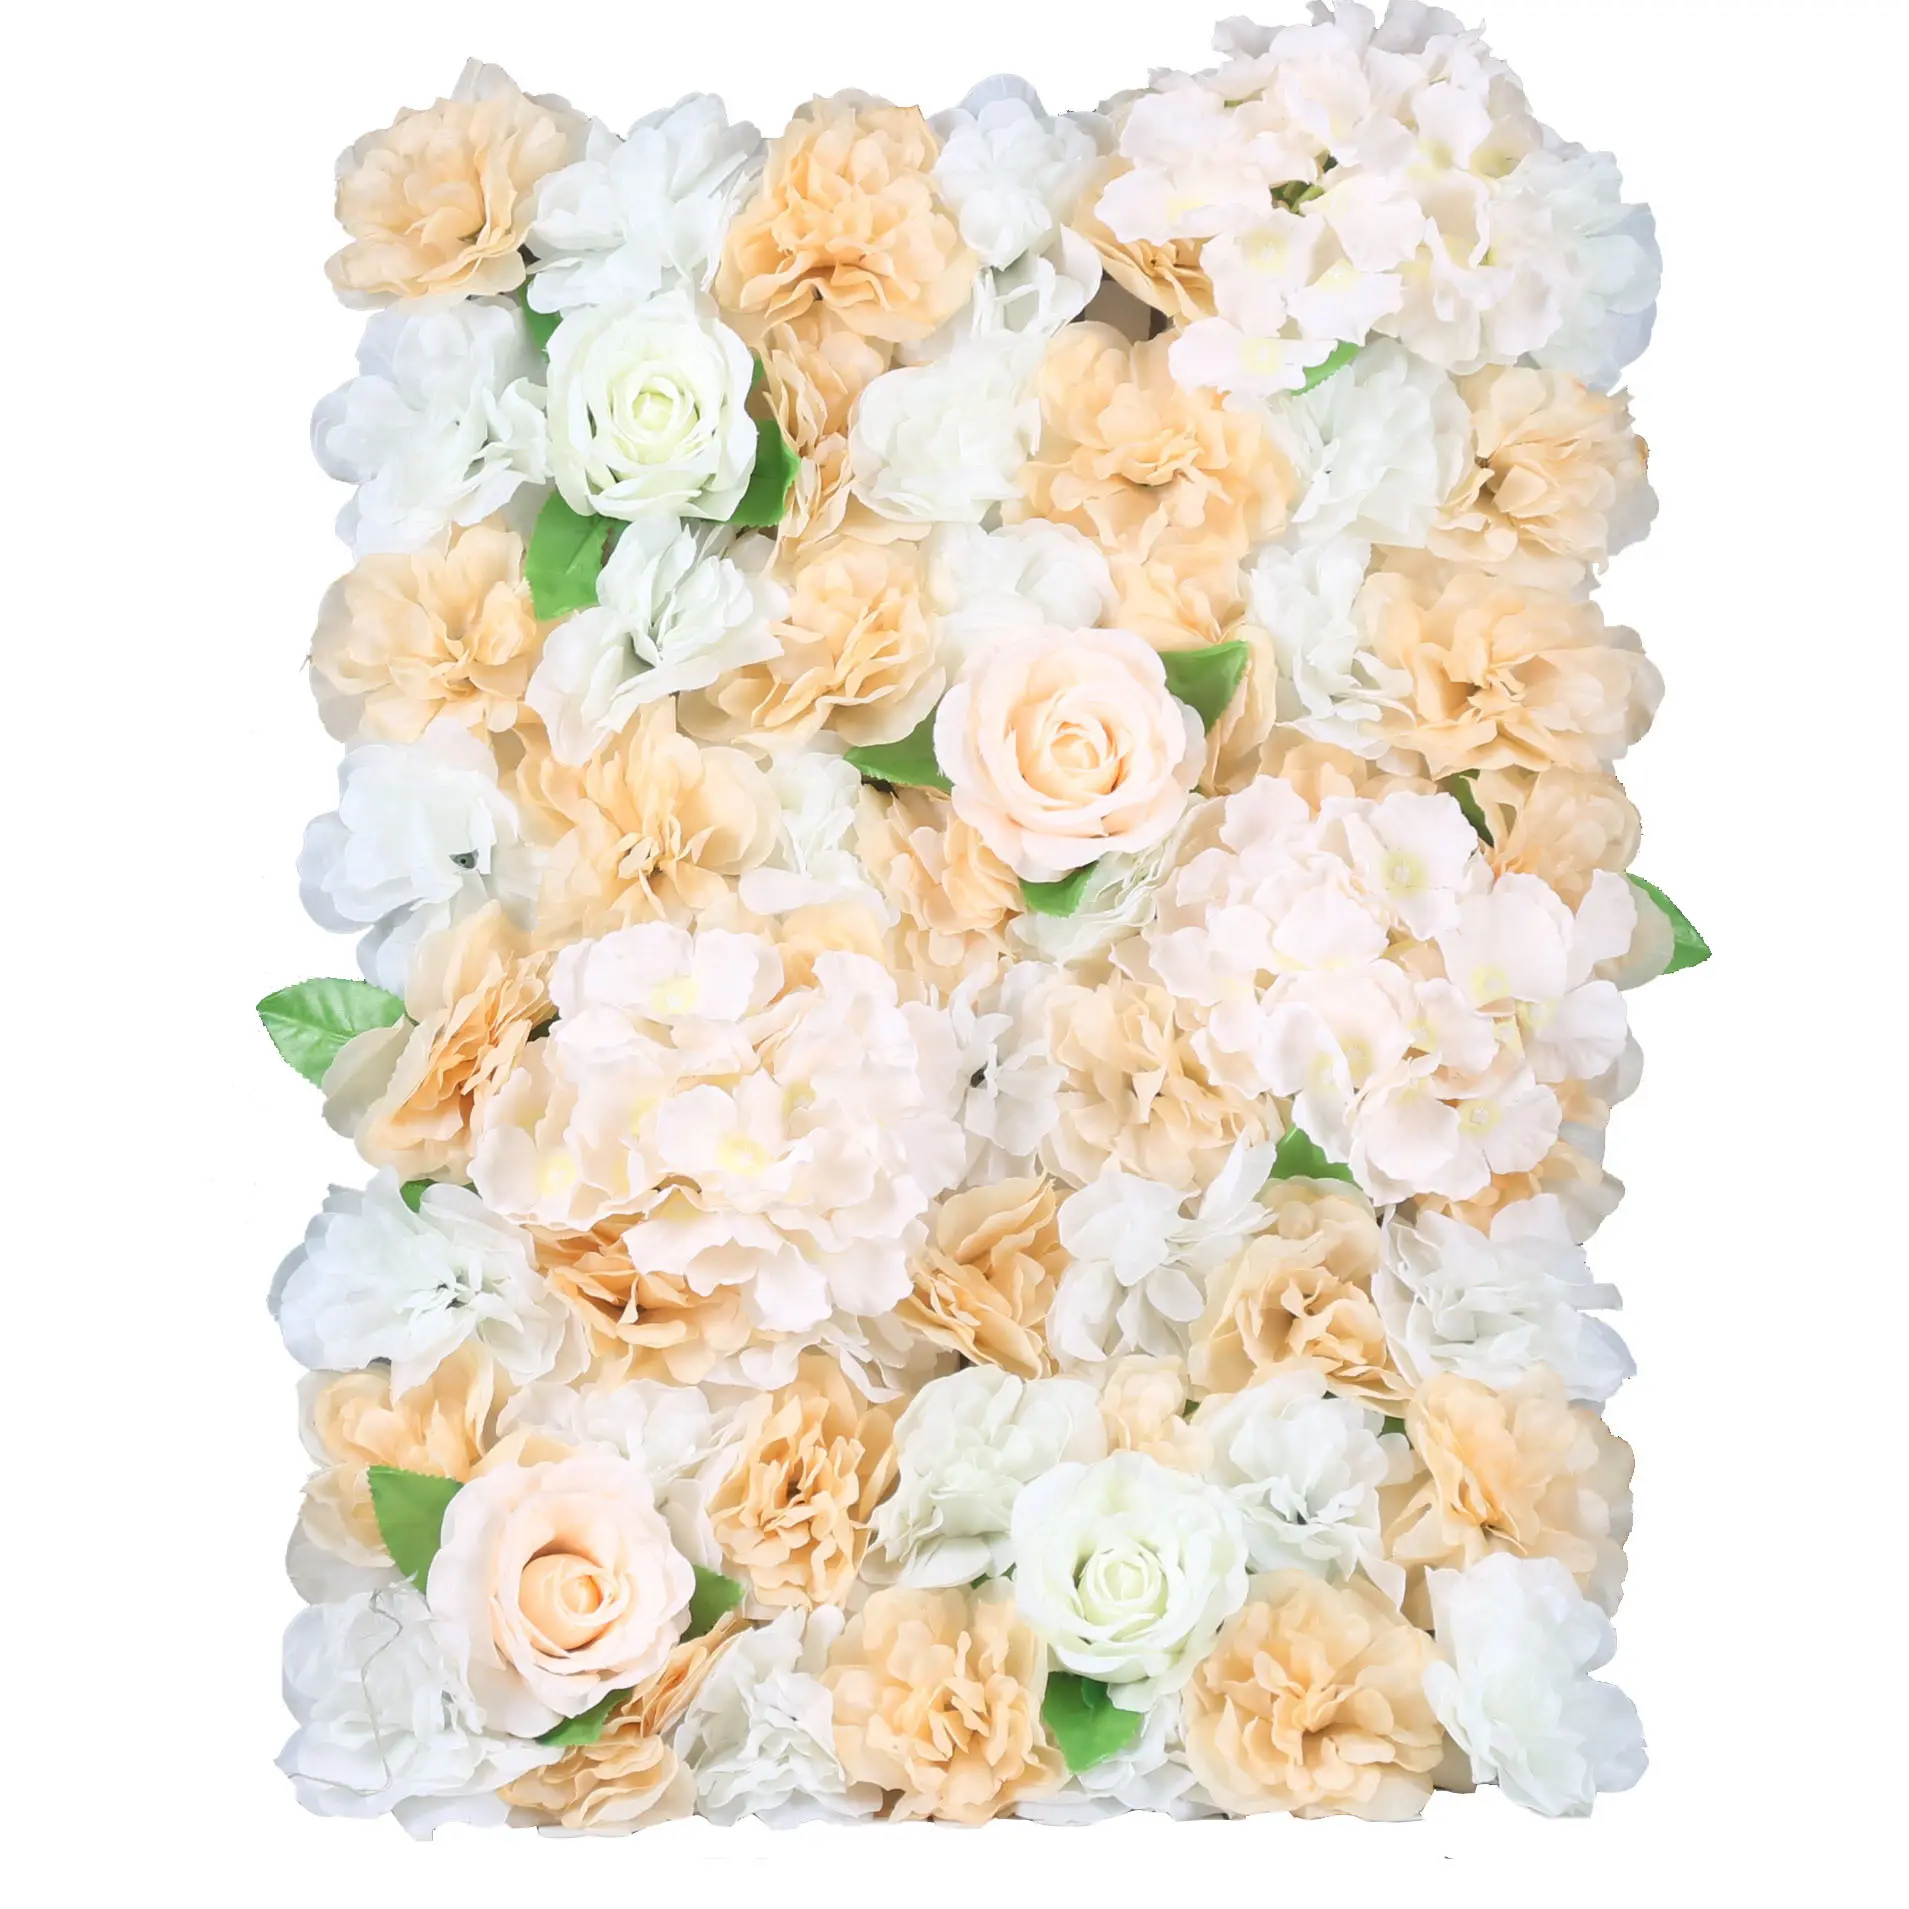 Venda a granel evento de decoração 40x60 cm, fundo roxo de casamento, flor artificial, parede para decoração